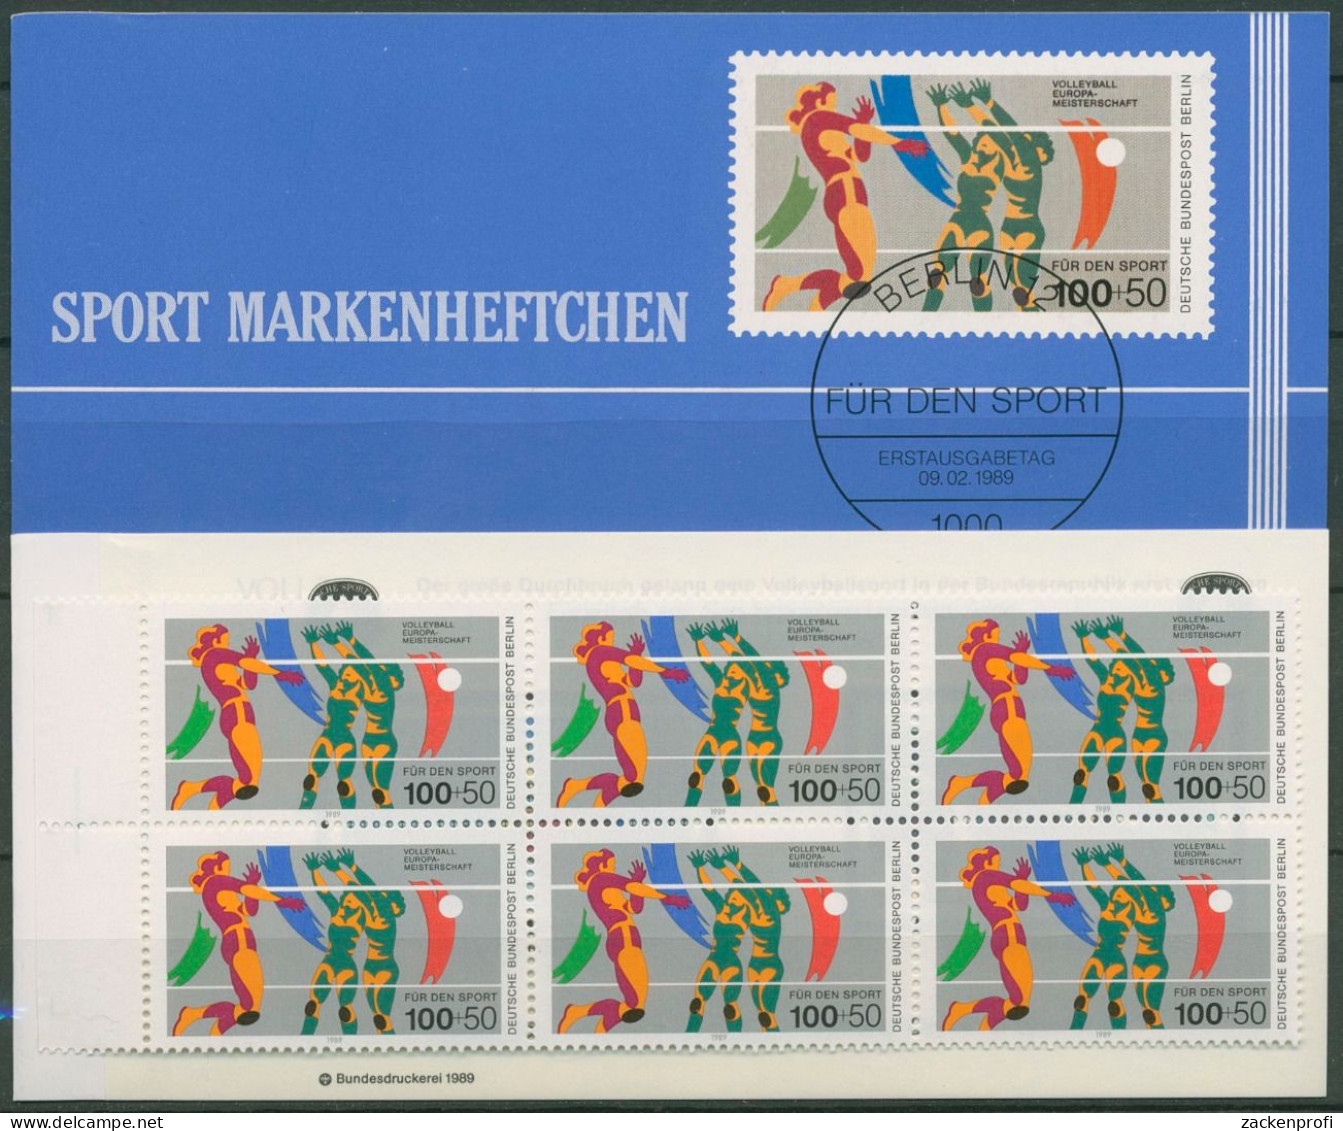 Berlin Deutsche Sporthilfe 1989 Markenheftchen SMH 11 (836) Postfrisch (C99137) - Cuadernillos